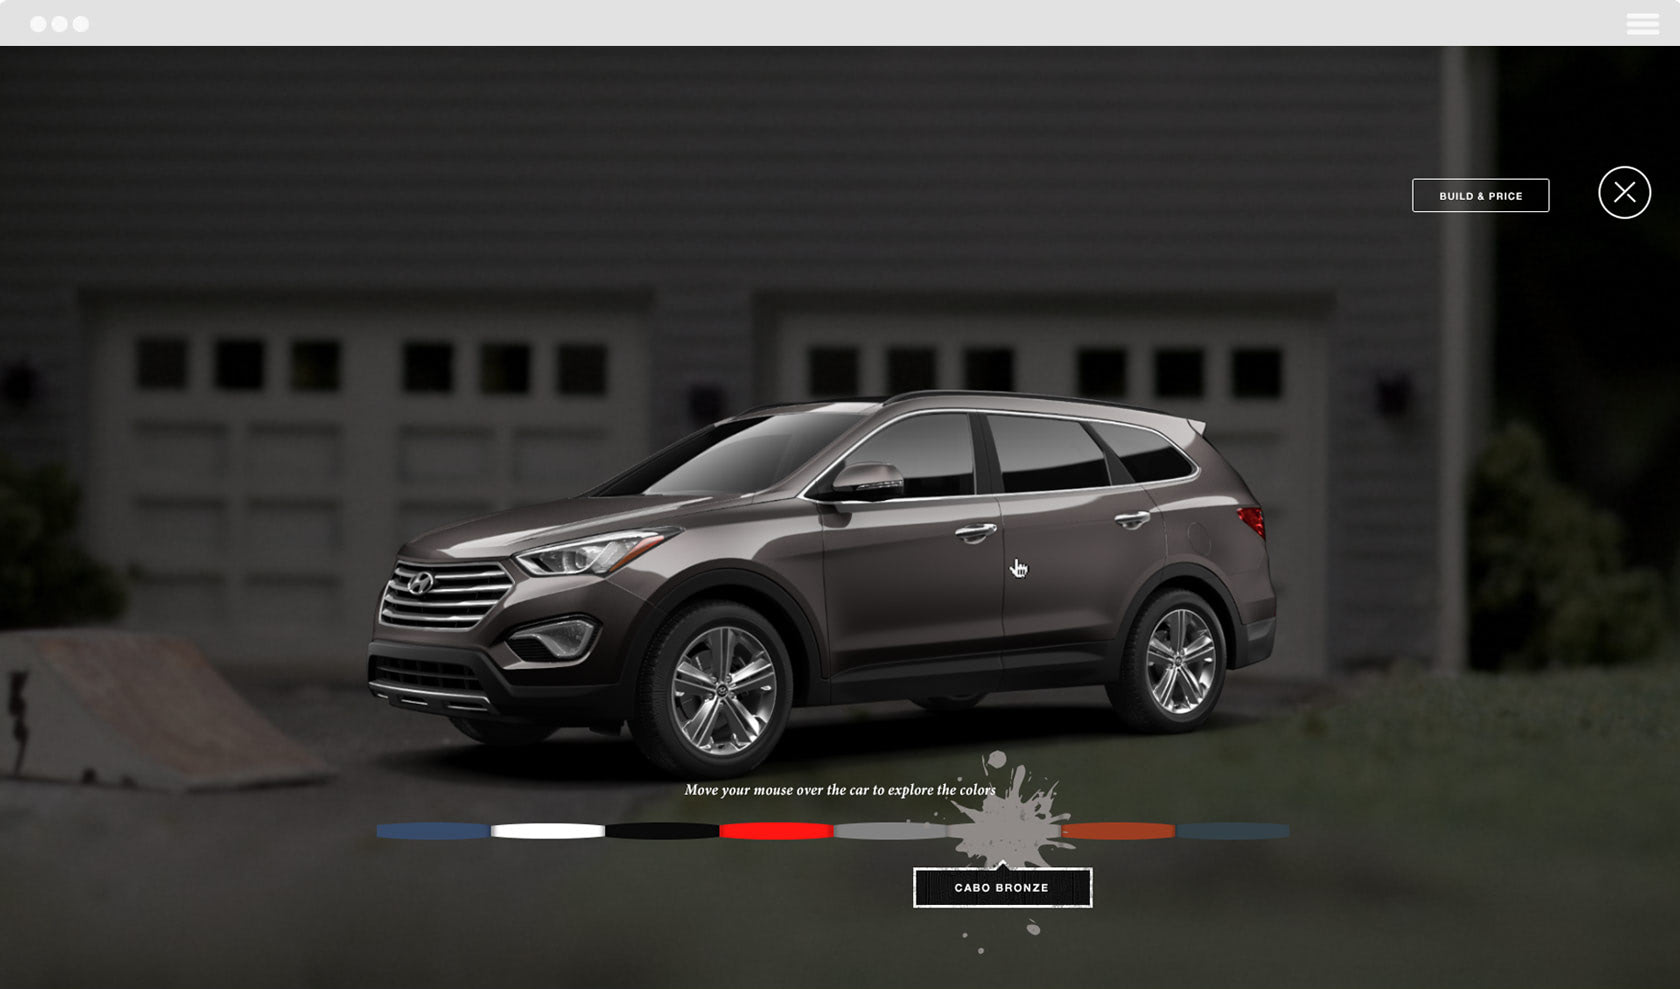 Hyundai Santa Fe — Epic Playdate build and price